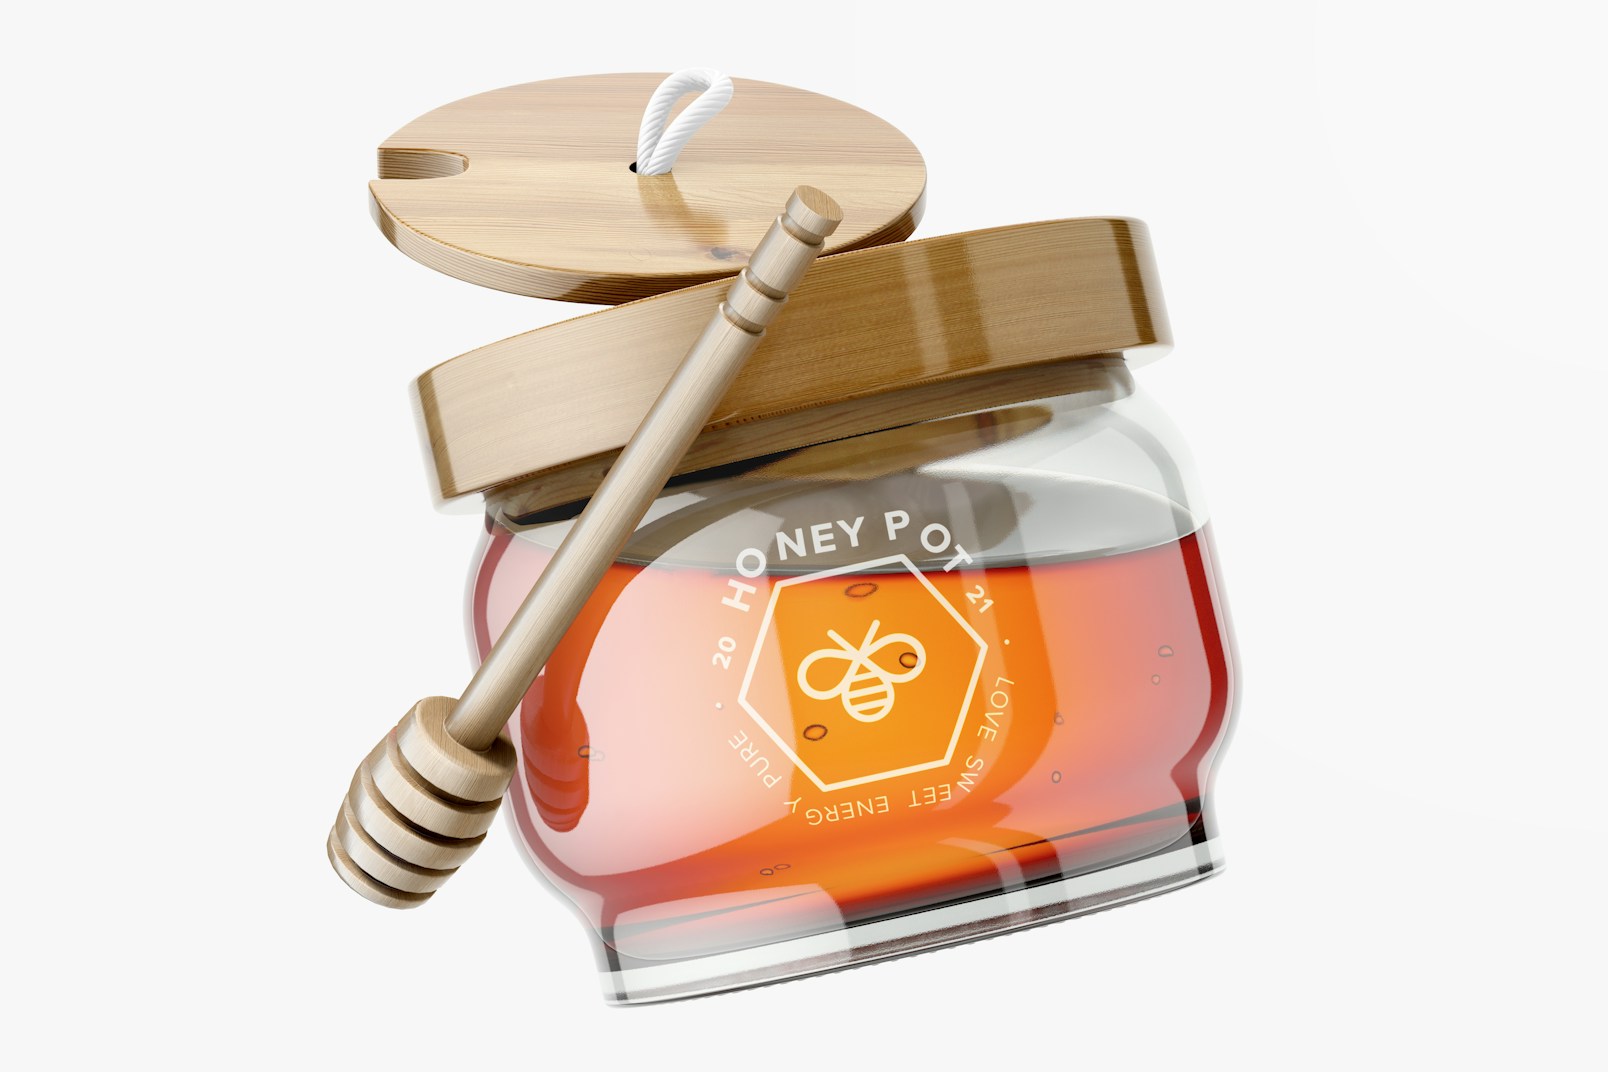 Honey Pot with Dispenser Mockup, Floating